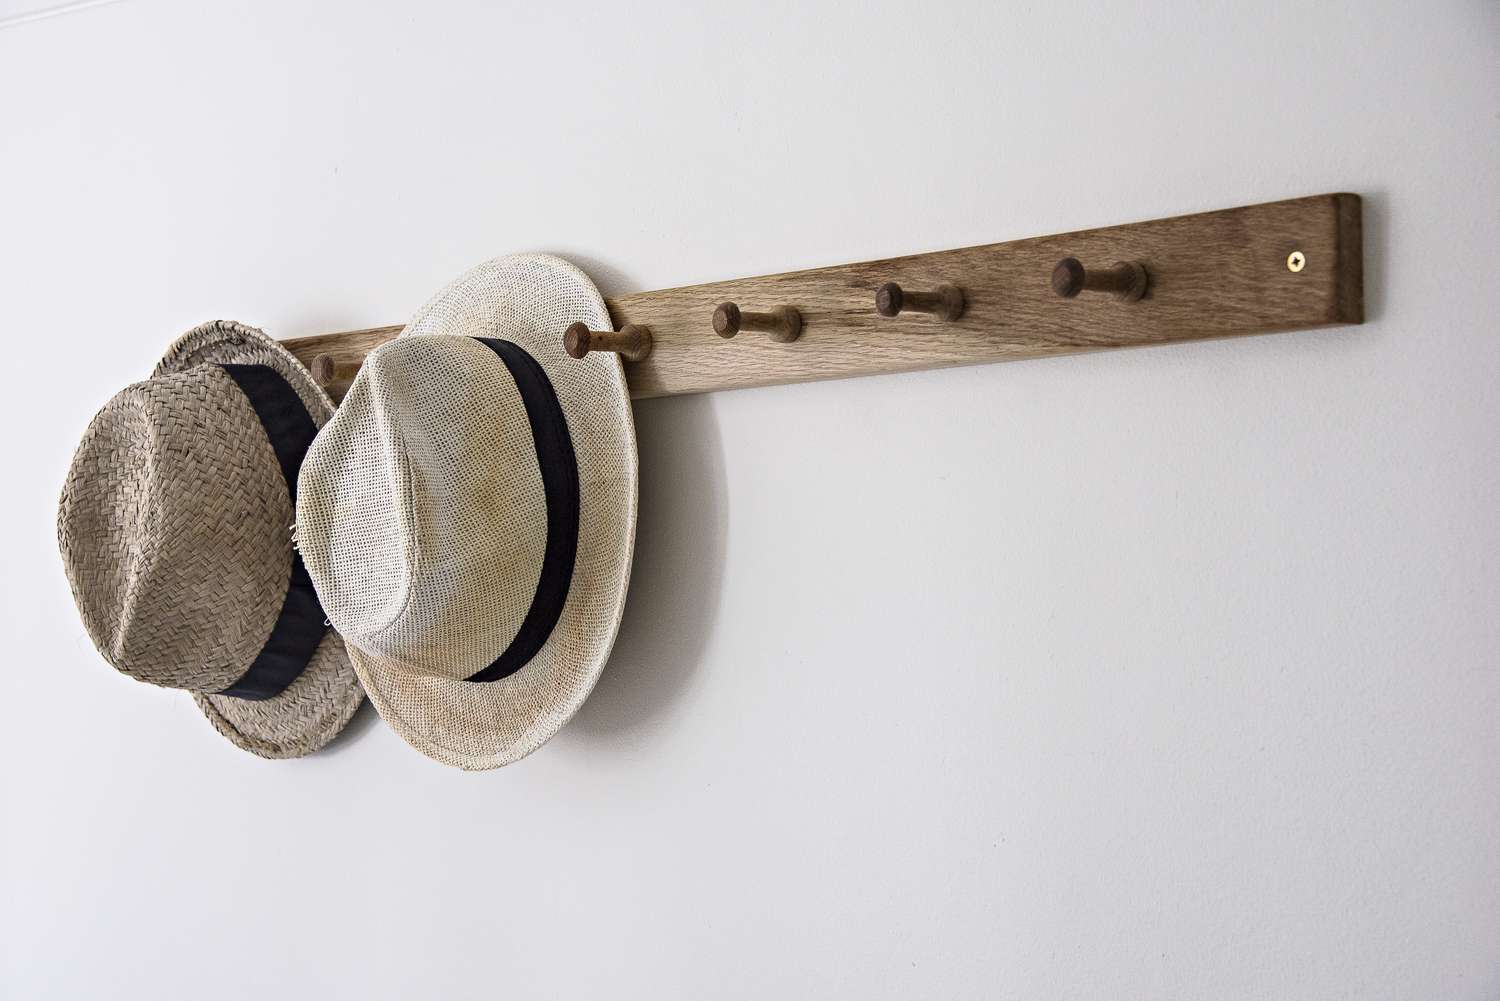 Chapéus pendurados em gancho na parede do banheiro